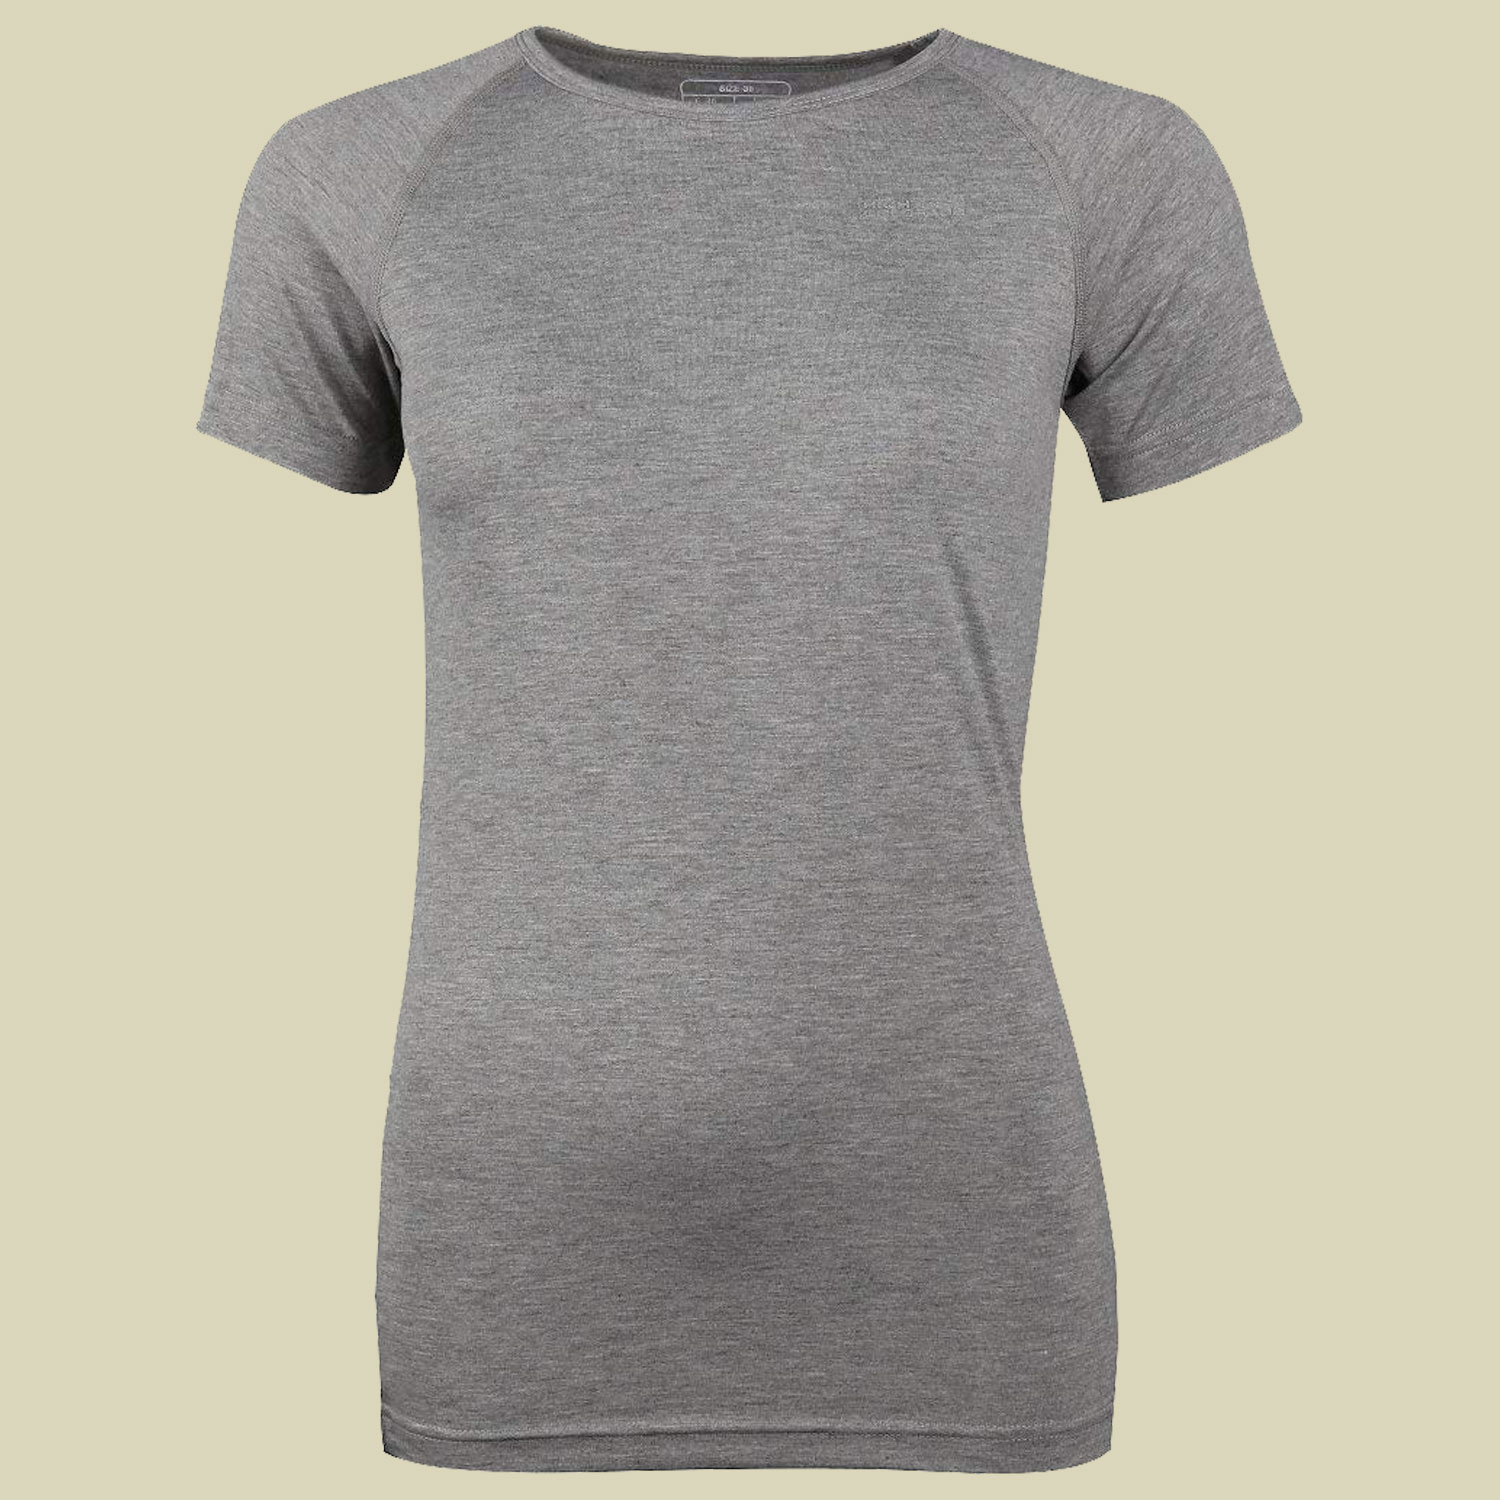 Bergen ½ Arm-Shirt Women Größe 38 Farbe 7002 hellgrau melange